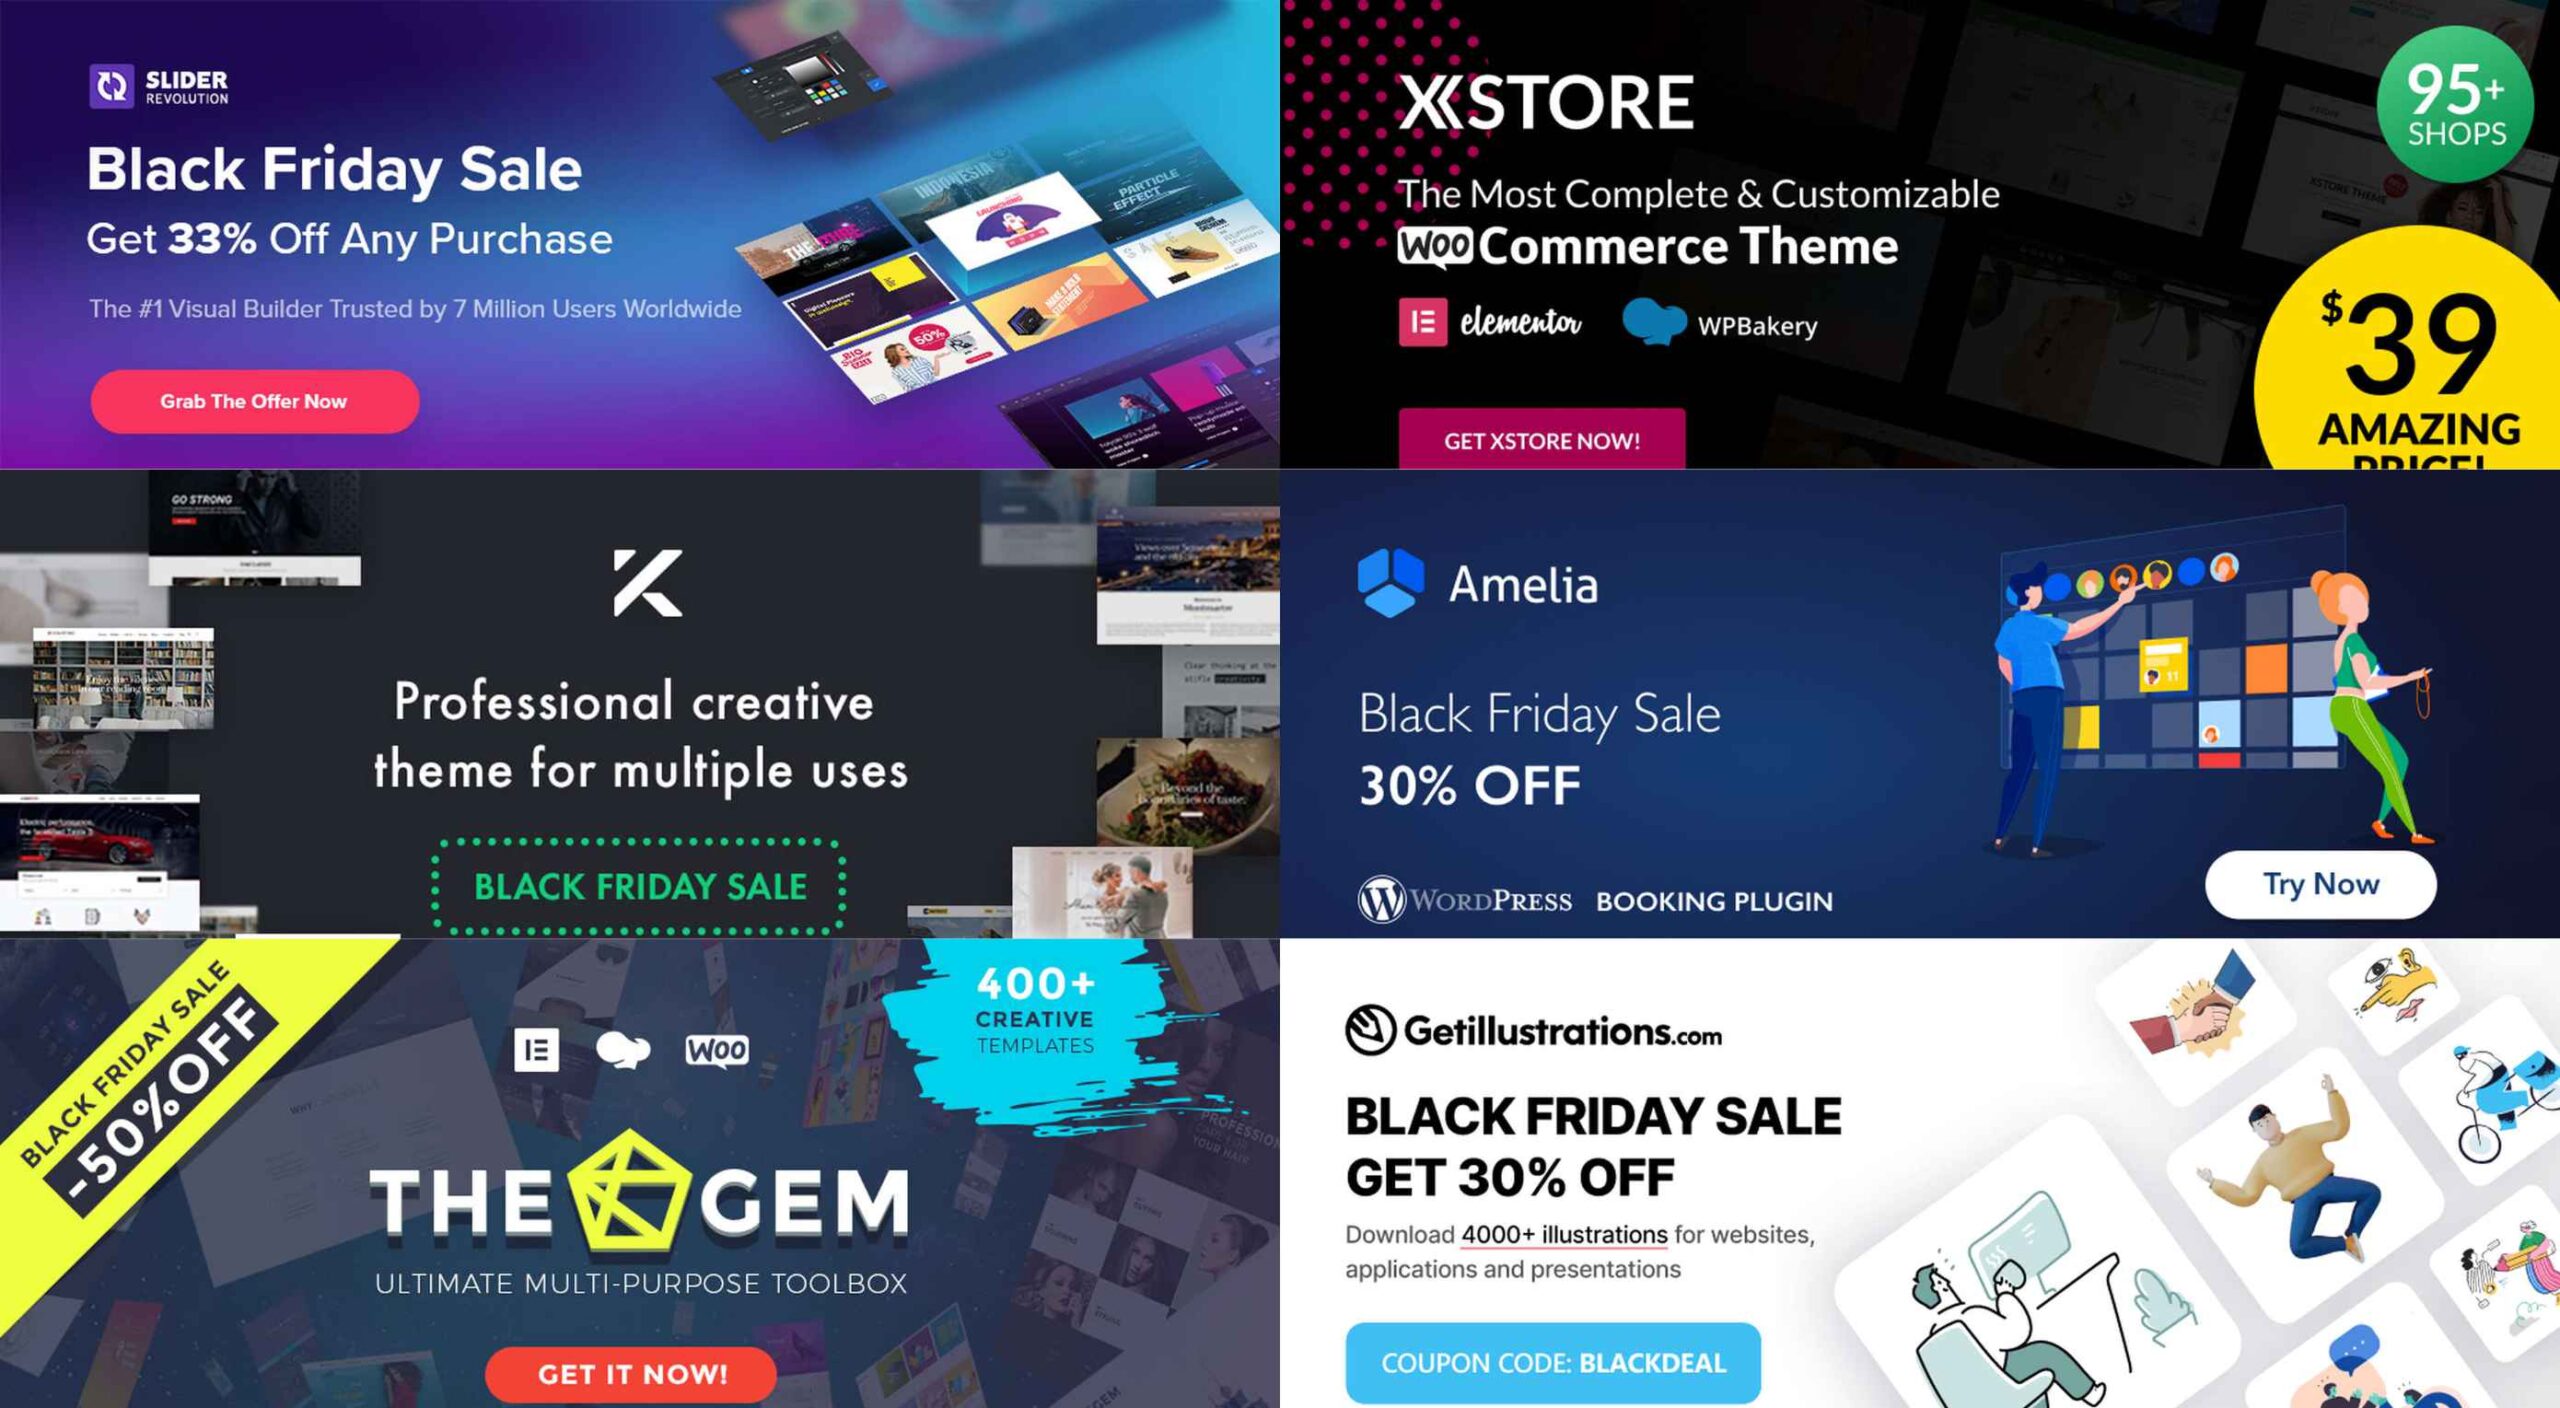 8 Awesome Black Friday 2020 Deals for Designers (up to 94% off!) | Webdesigner Depot